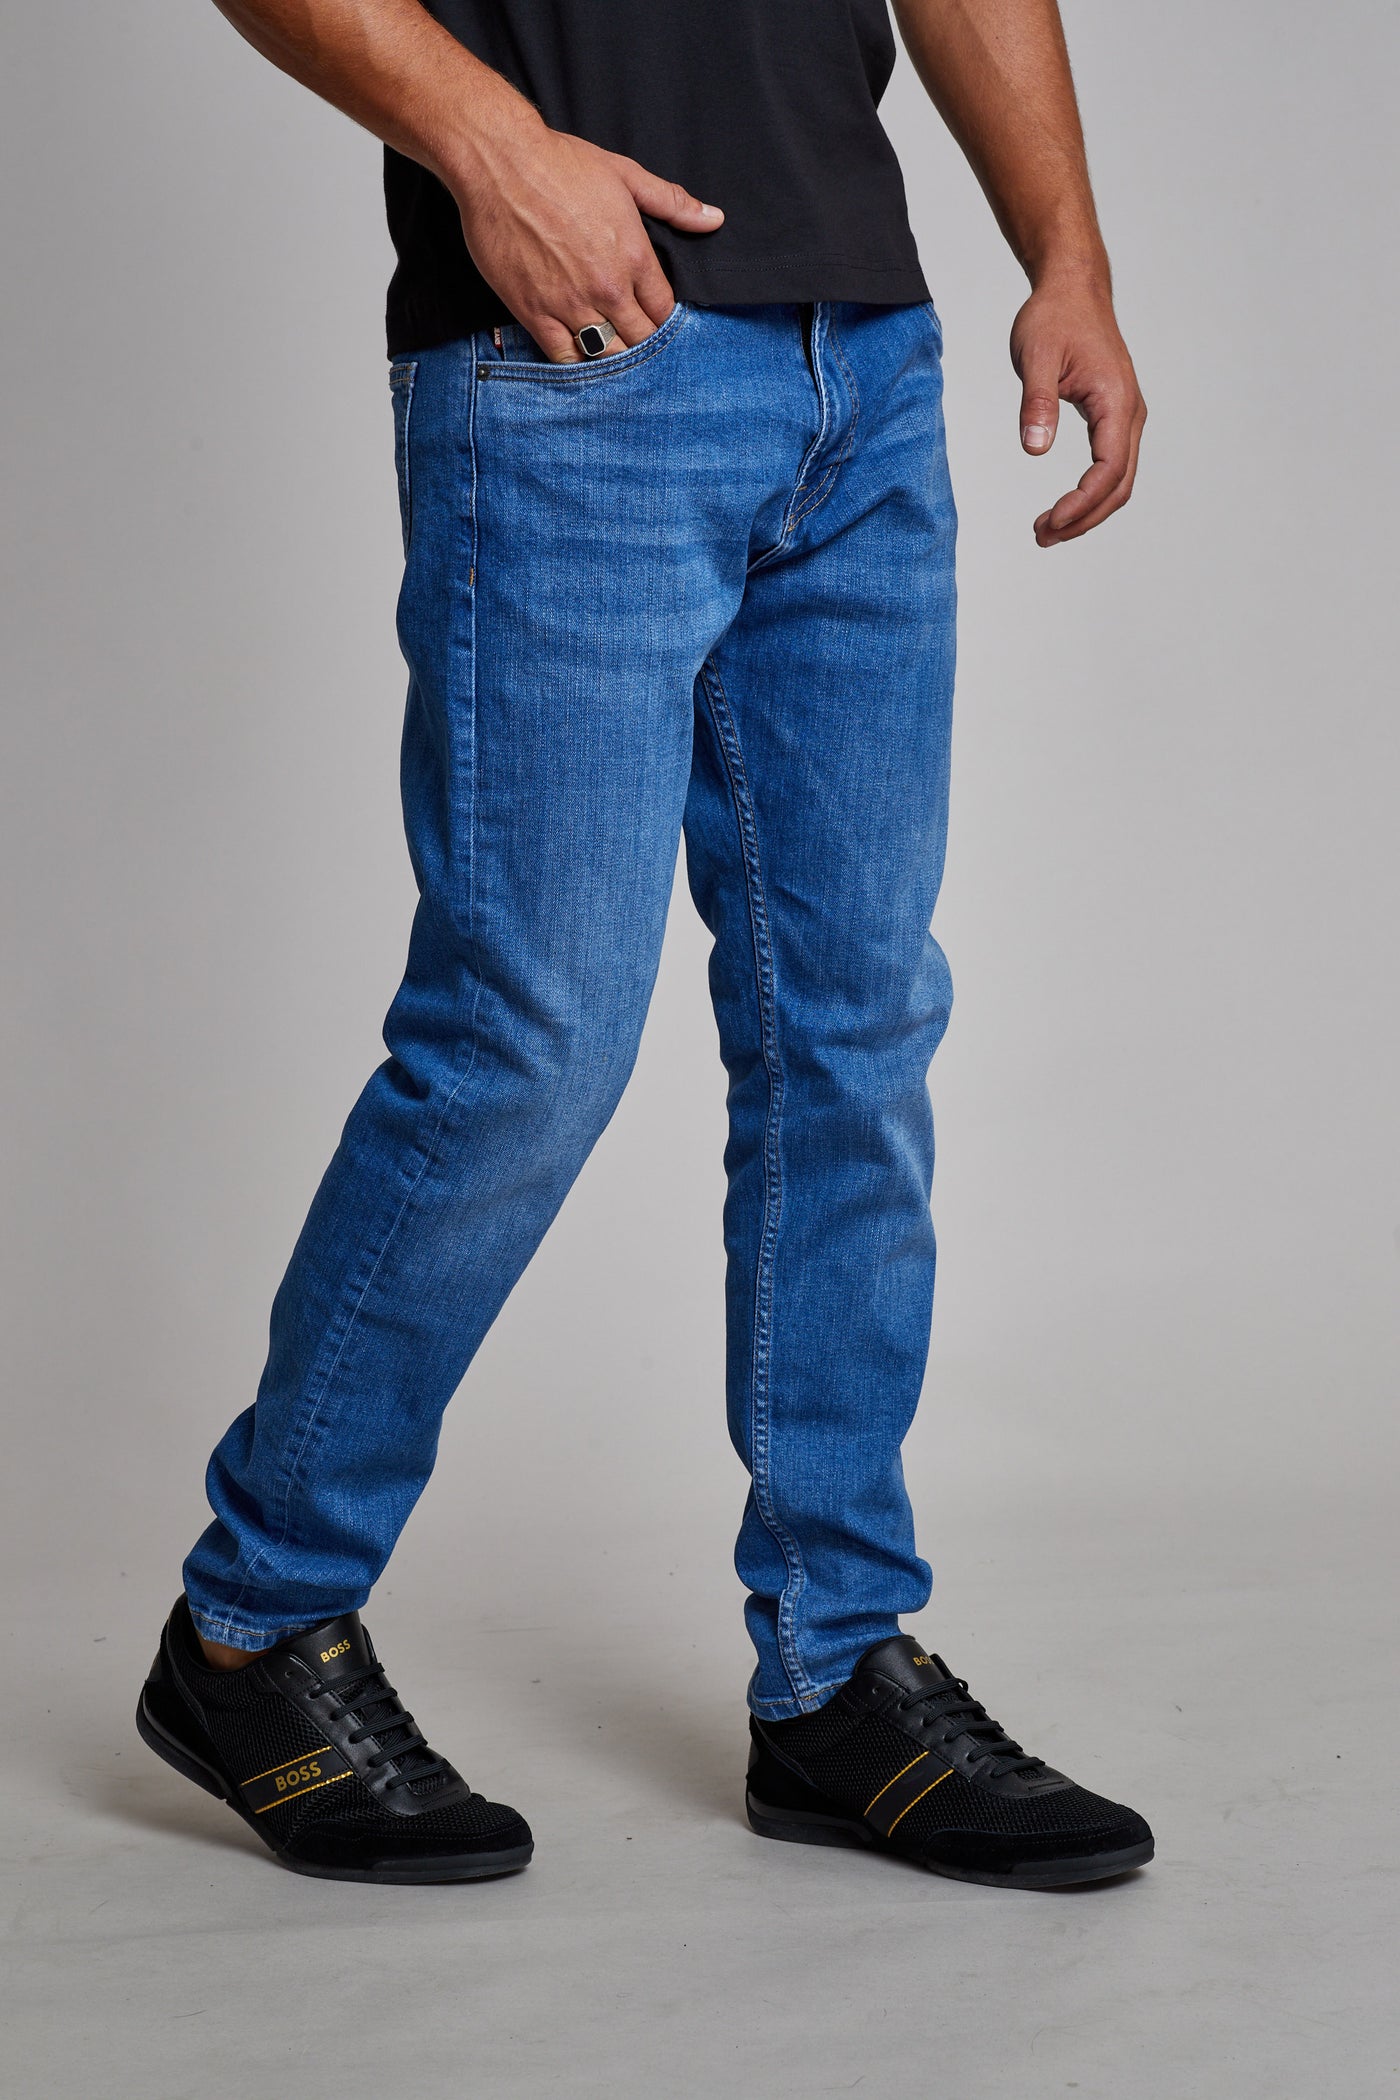 מכנס ג'ינס סלים TU בצבע כחול 3